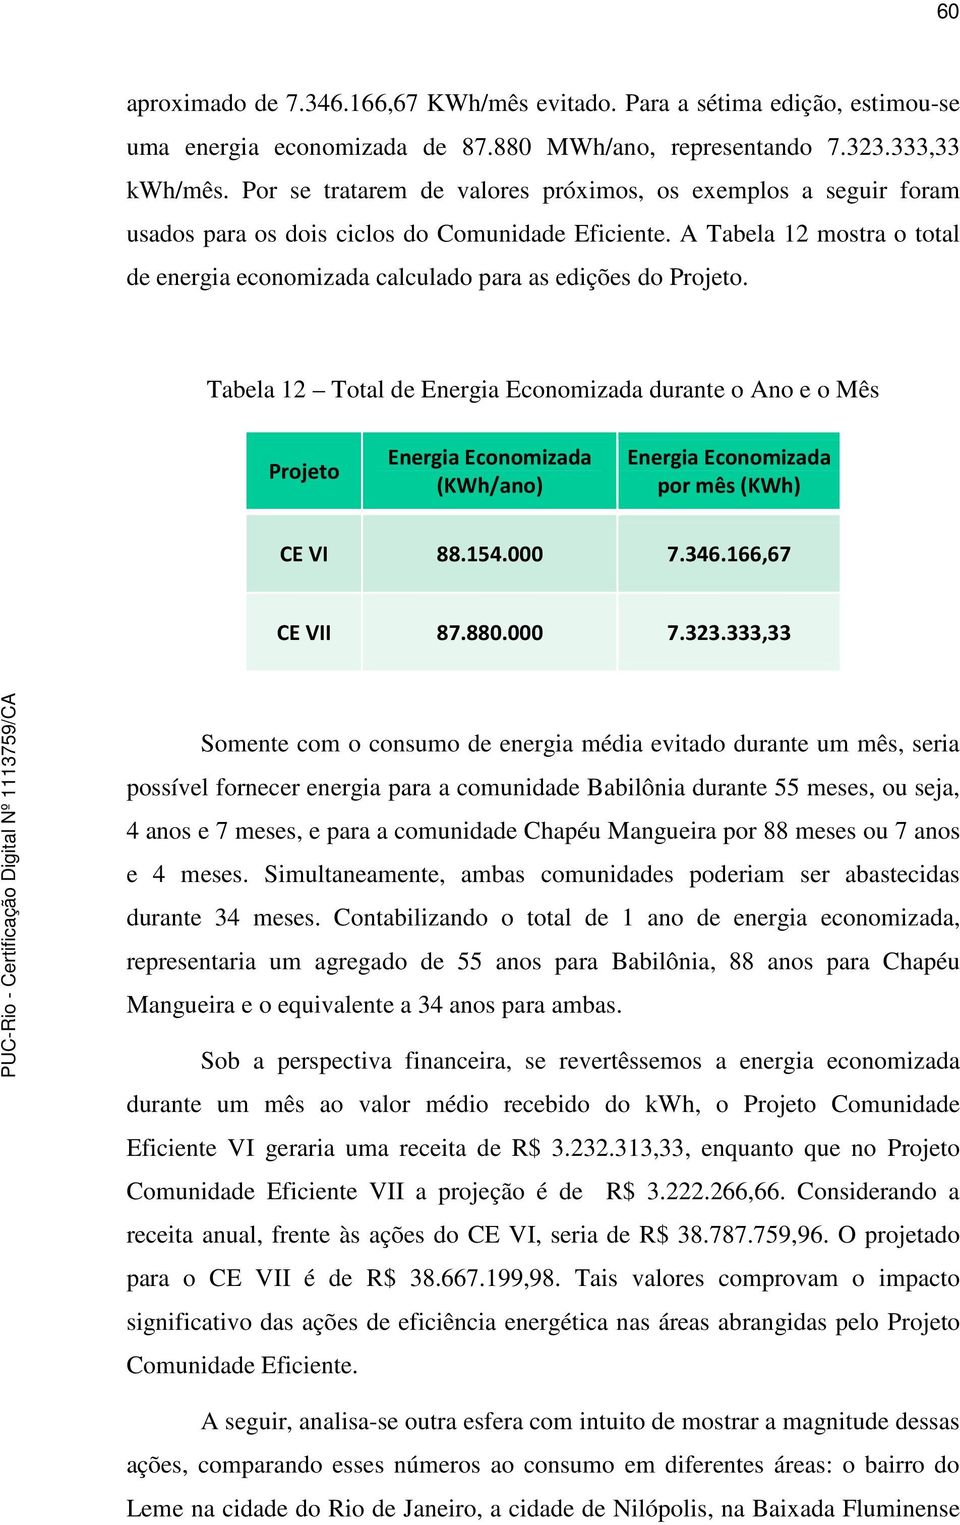 A Tabela 12 mostra o total de energia economizada calculado para as edições do Projeto.